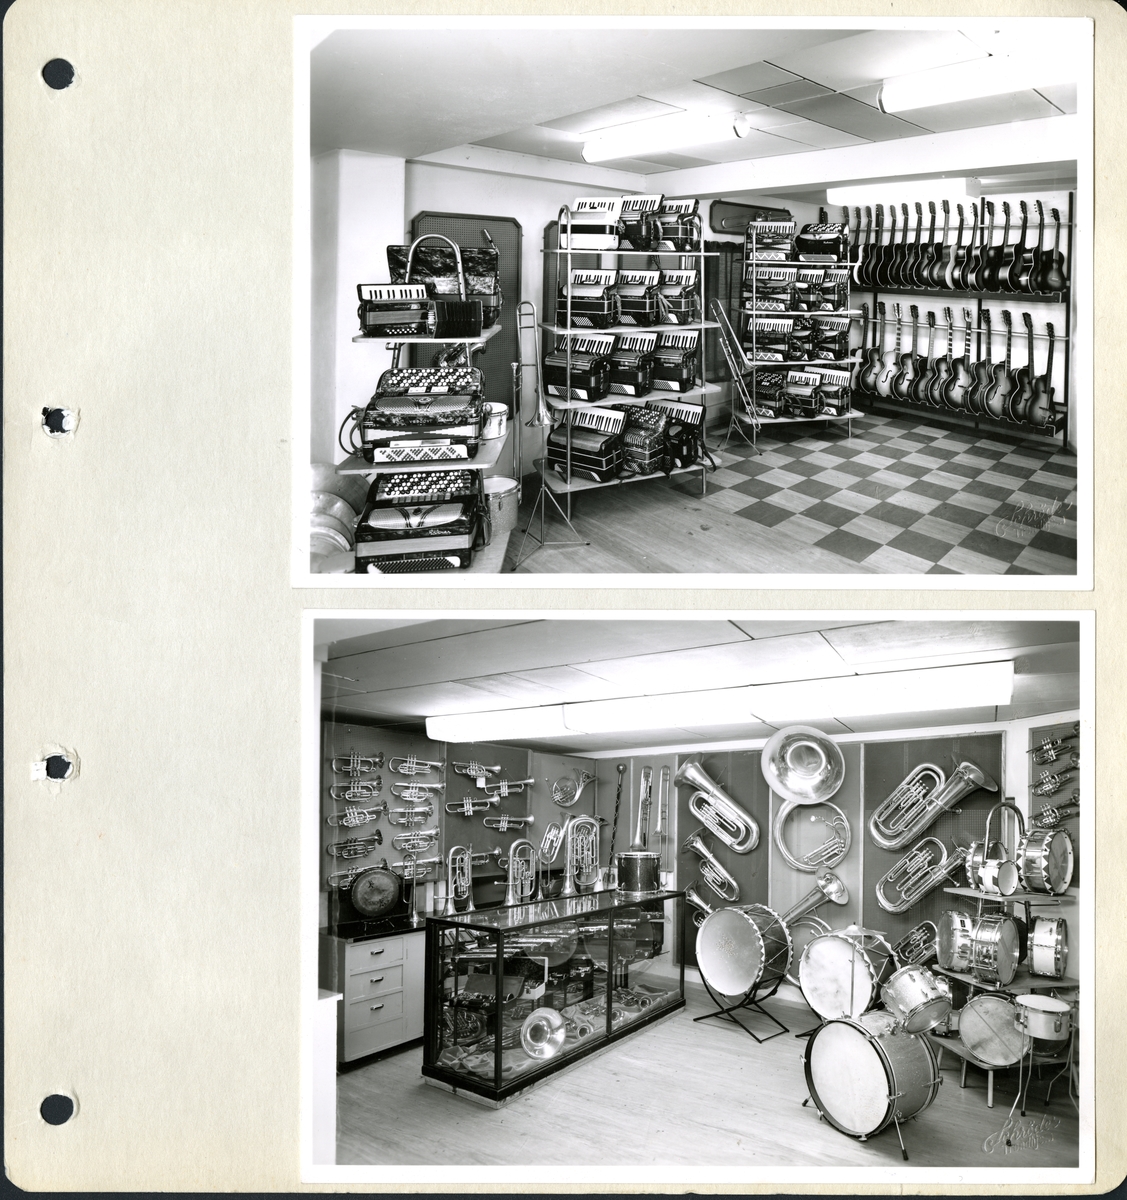 Butikkinteriør fra Olaf T. Ranum musikkhandel i Olav Tryggvassonsgate 18, Trondheim. Bildet viser gitar- og trekkspillavdelingen i butikken. Også trommer og blåseinstrumenter ble solgt i denne delen av butikken.